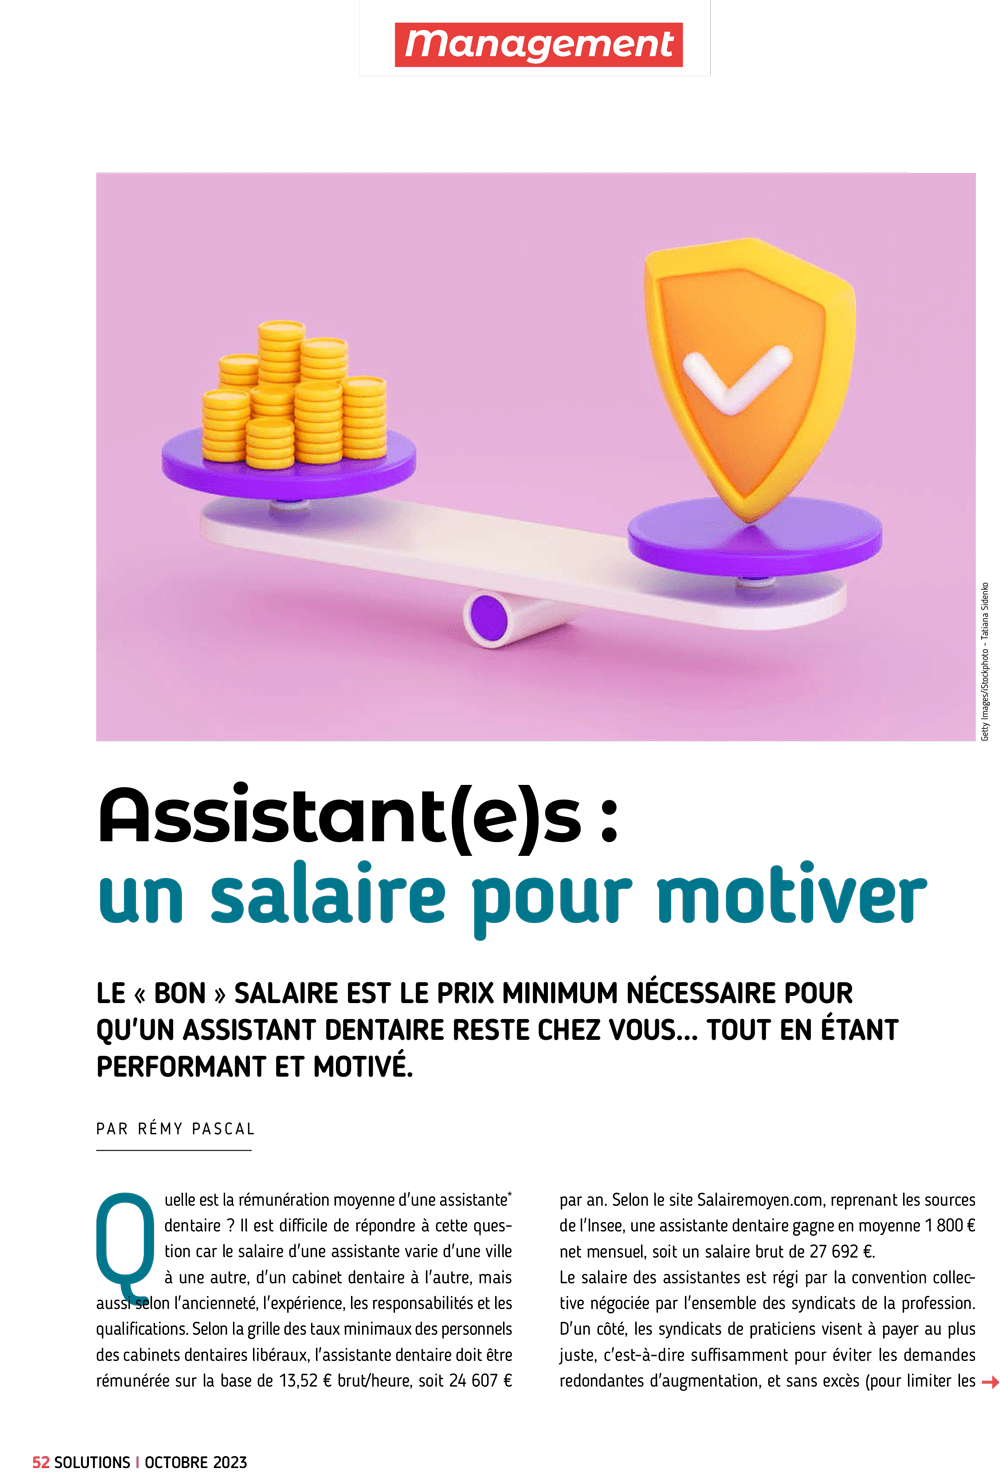 assistante_dentaire_un_salaire_pour_motiver.png